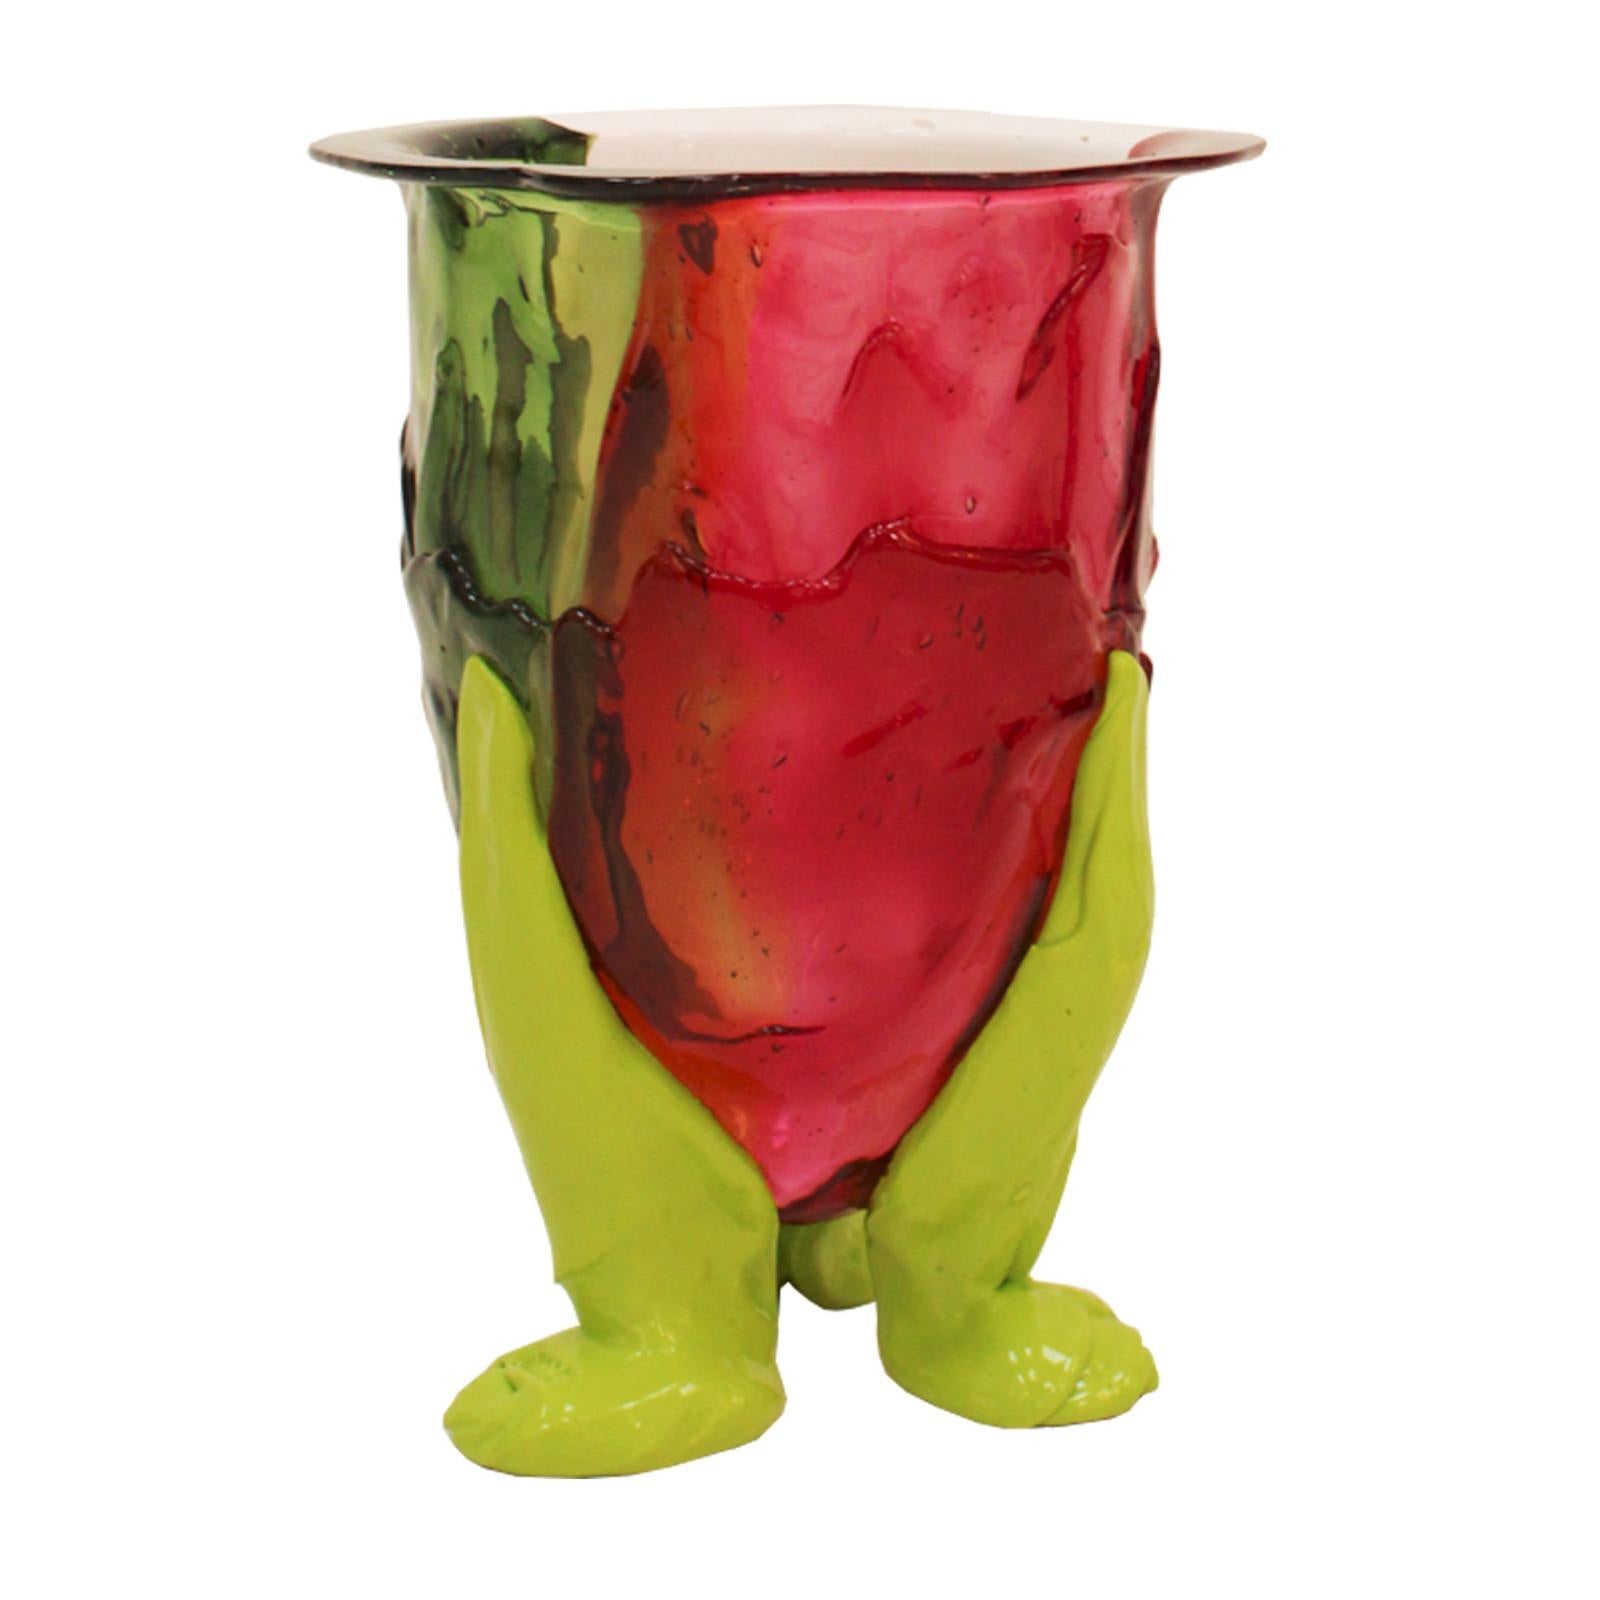 Contemporary vase designed by Gaetano Pesce in 1995 and edited by Fish Design. Made of colored soft resin. Unique piece. Italy

Bibliography

Pabellón Rosa. Gaetano Pesce. Catálogo de la exposición (Milán, octubre de 2007).